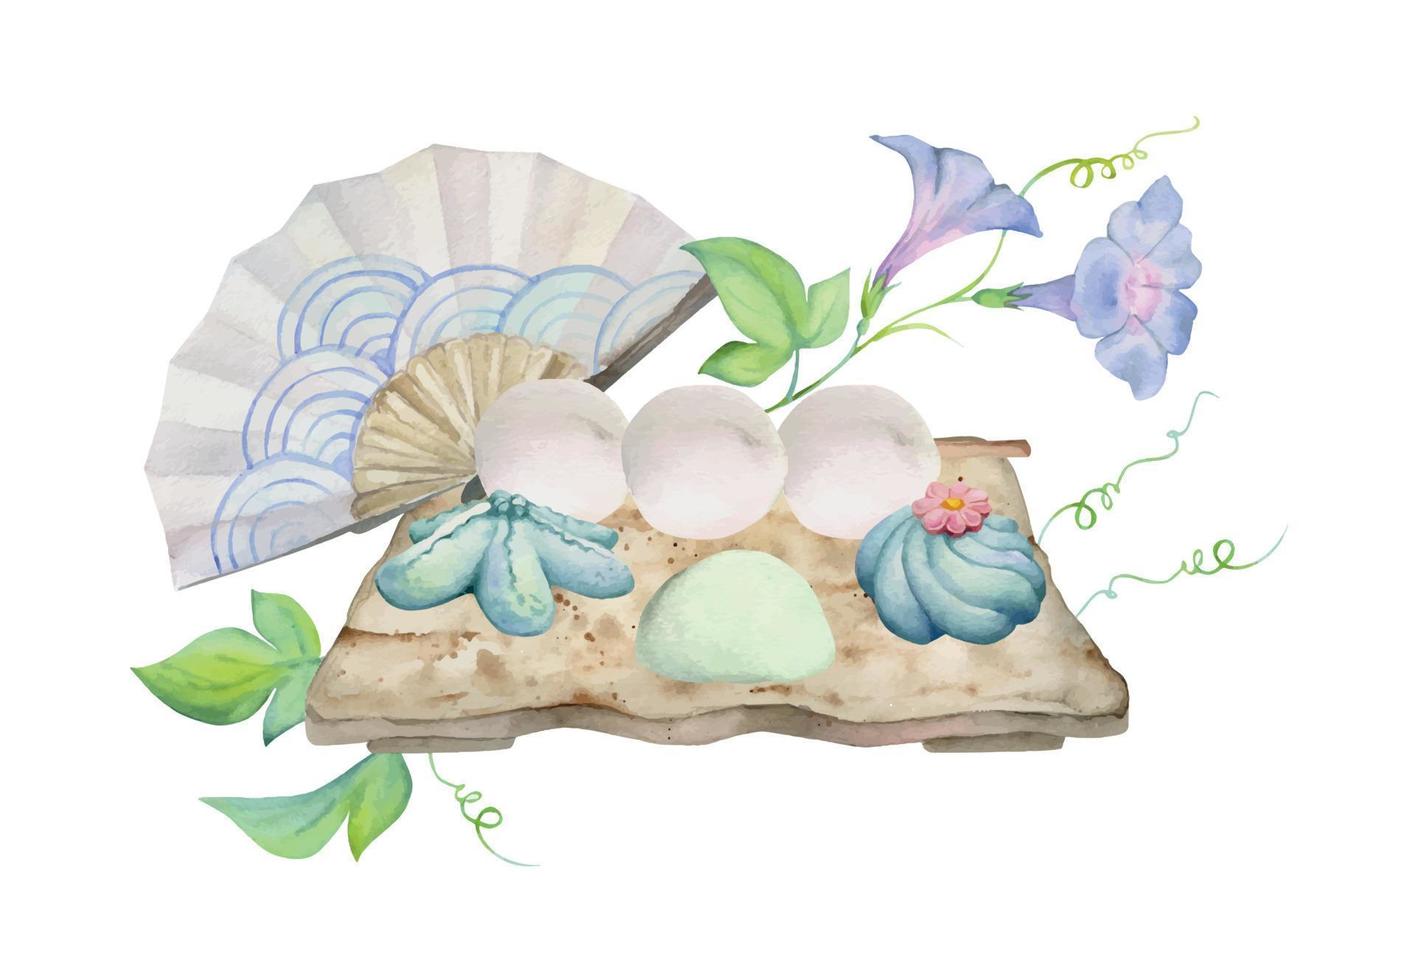 Aquarell Hand gezeichnet traditionell japanisch Süßigkeiten. Keramik Gericht, Sommer- Neri-Kiri, mochi, Objekte. isoliert auf Weiß Hintergrund. Design zum Einladungen, Restaurant Speisekarte, Gruß Karten, drucken, Textil- vektor